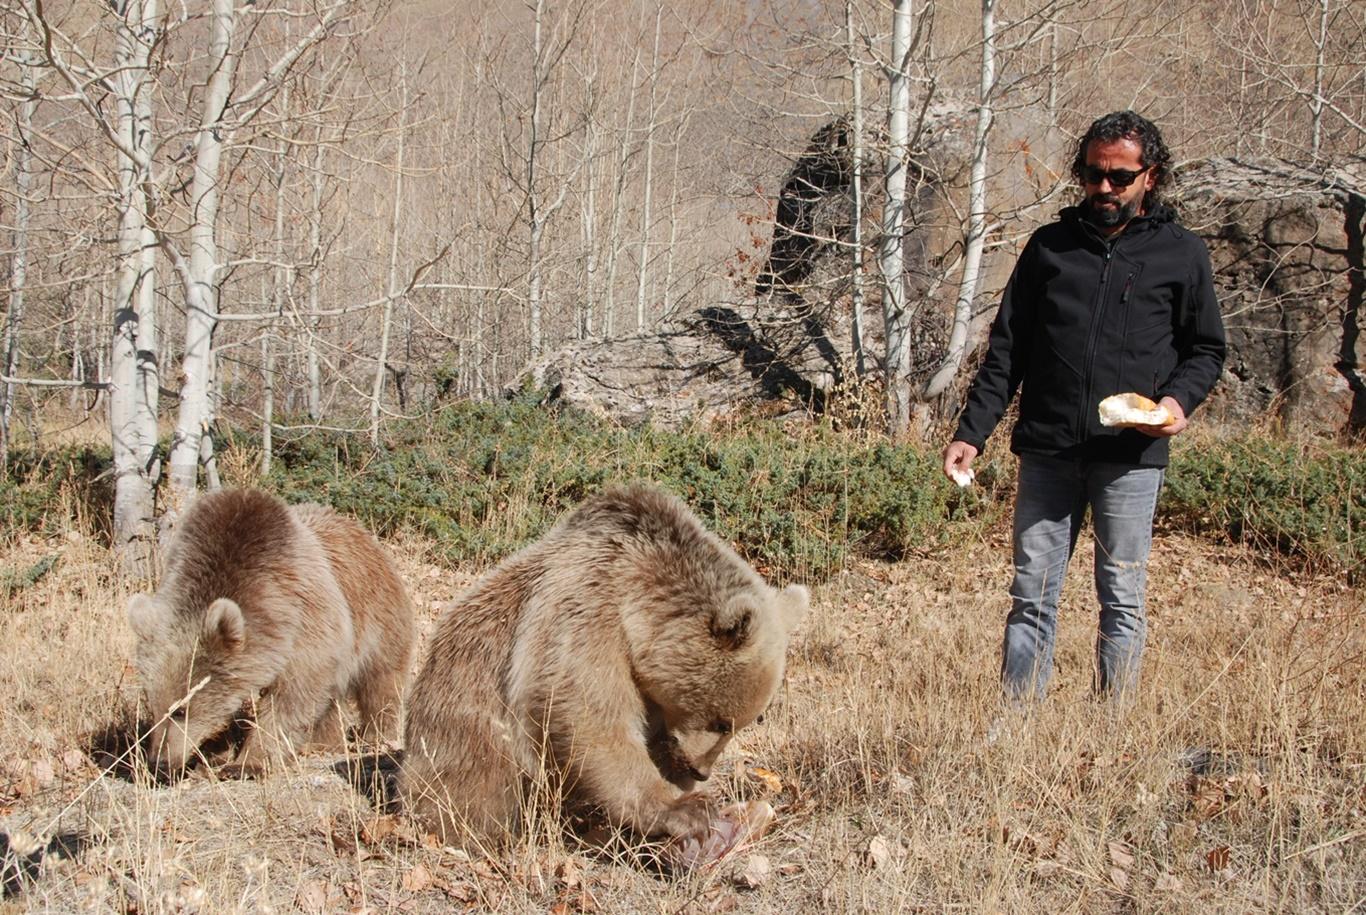 İnsanlar için tehlikeli hale gelen ayılar koruma altına alınmalı